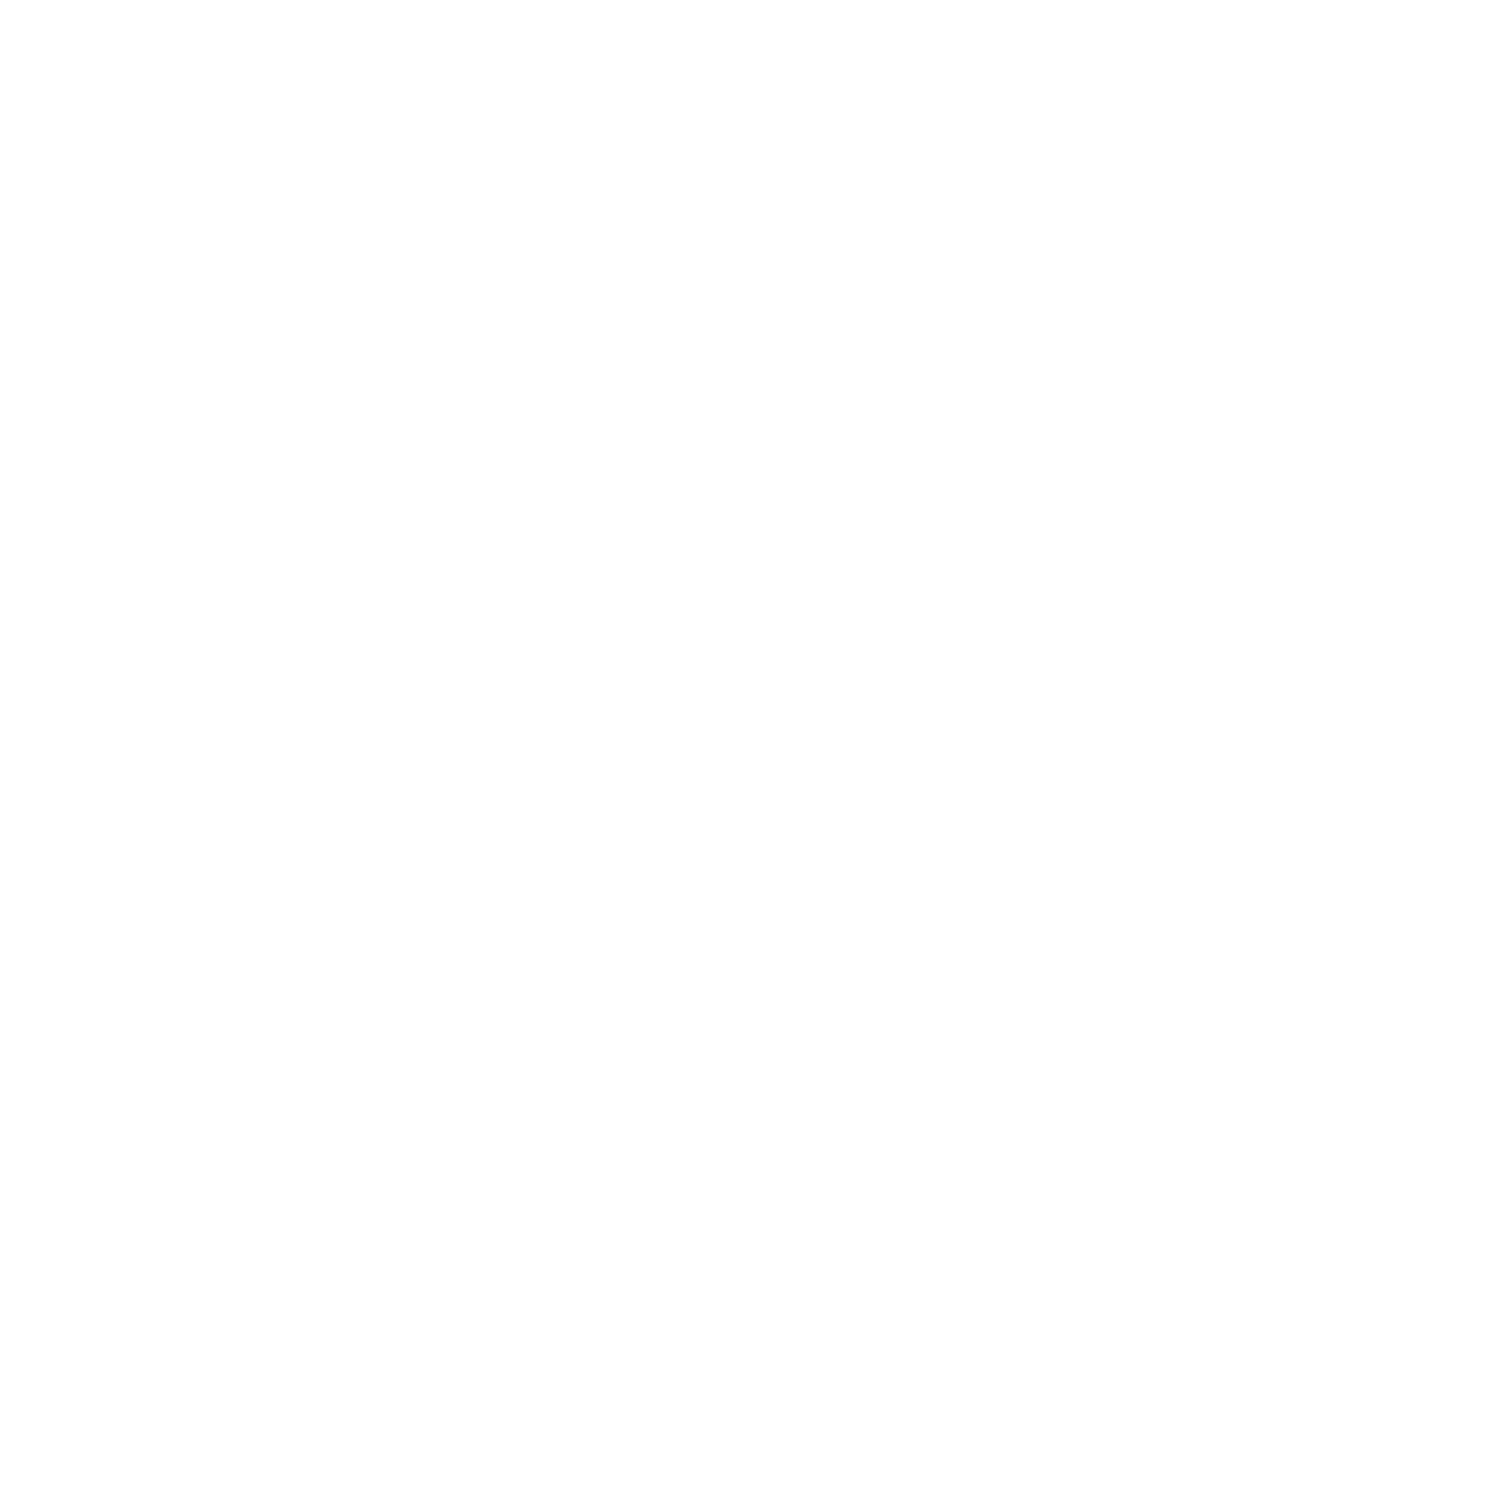 ERIC ETHRIDGE